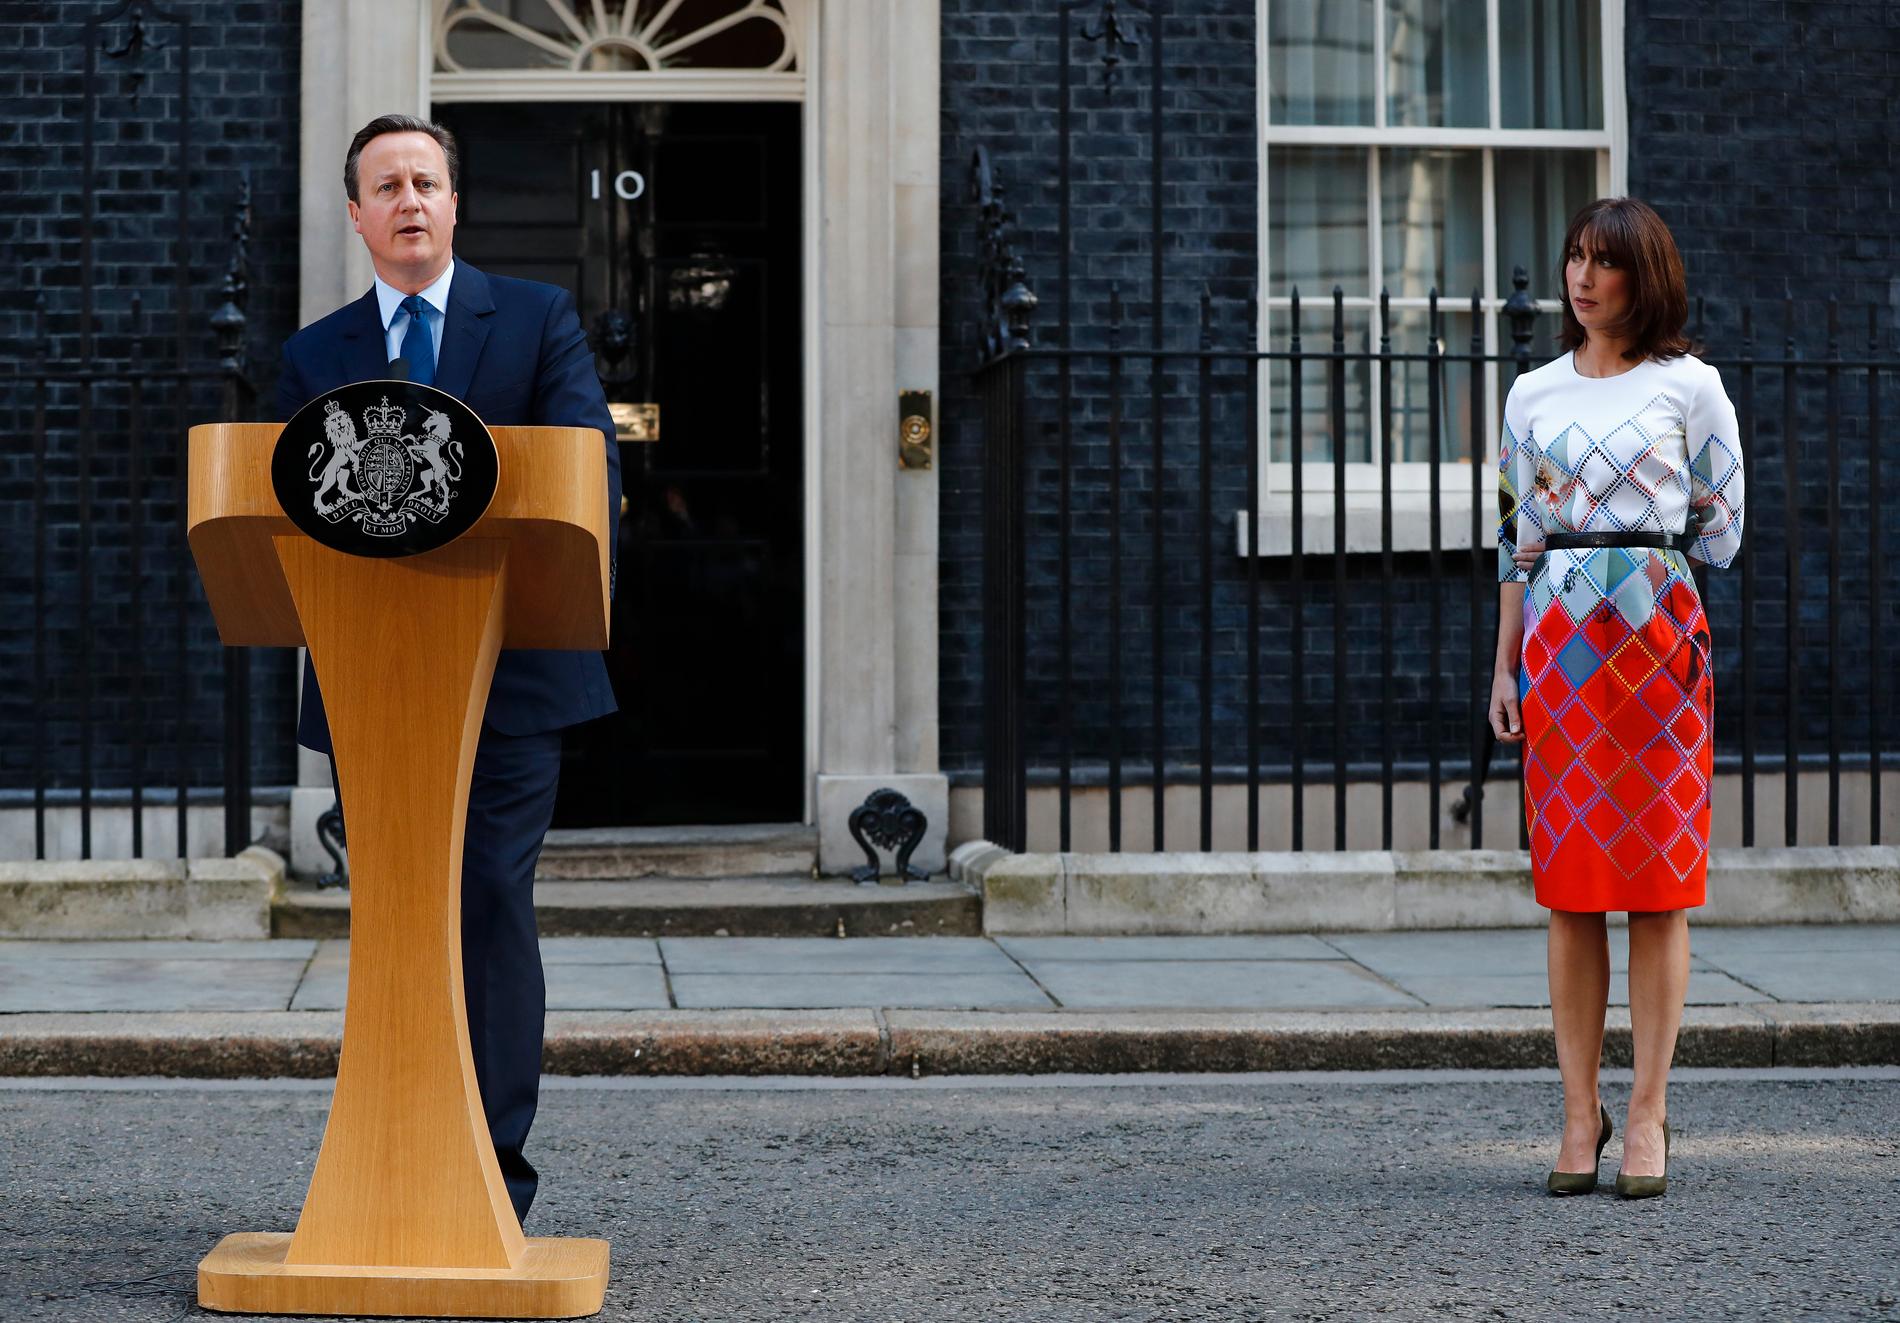 GÅR AV: Statsminister David Cameron fortalte folket at han vil gå av i løpet av et par måneder, som følge av nederlaget i EU-valget.